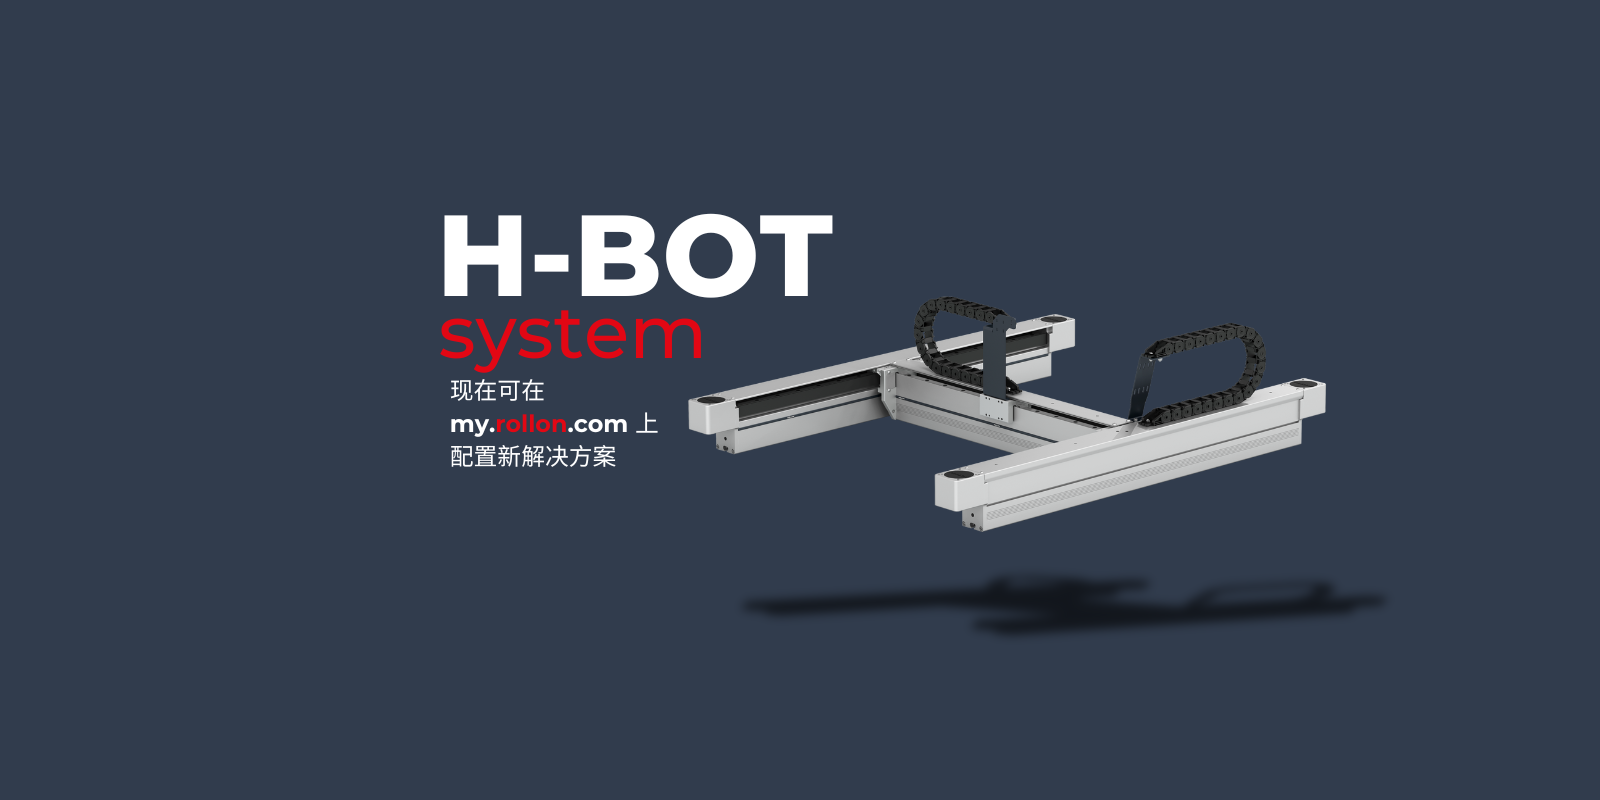 Společnost Rollon uvádí na trh H-Bot